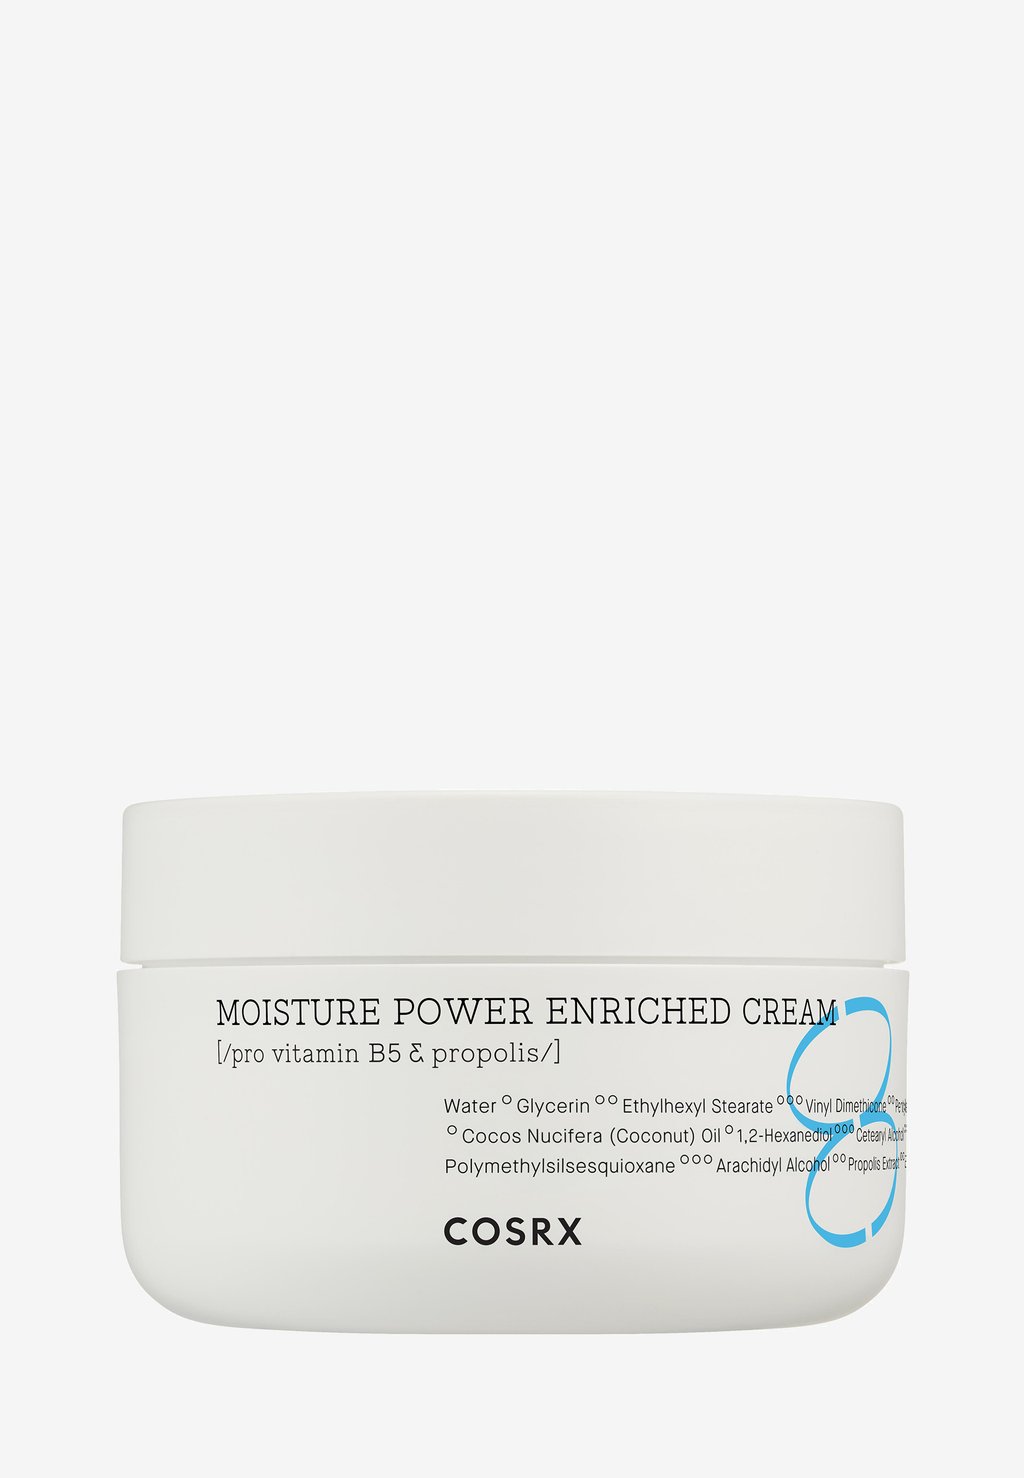 Дневной крем Moisture Power Enriched Cream COSRX cosrx hydrium moisture power enriched cream 50мл крем для глубокого увлажнения кожи